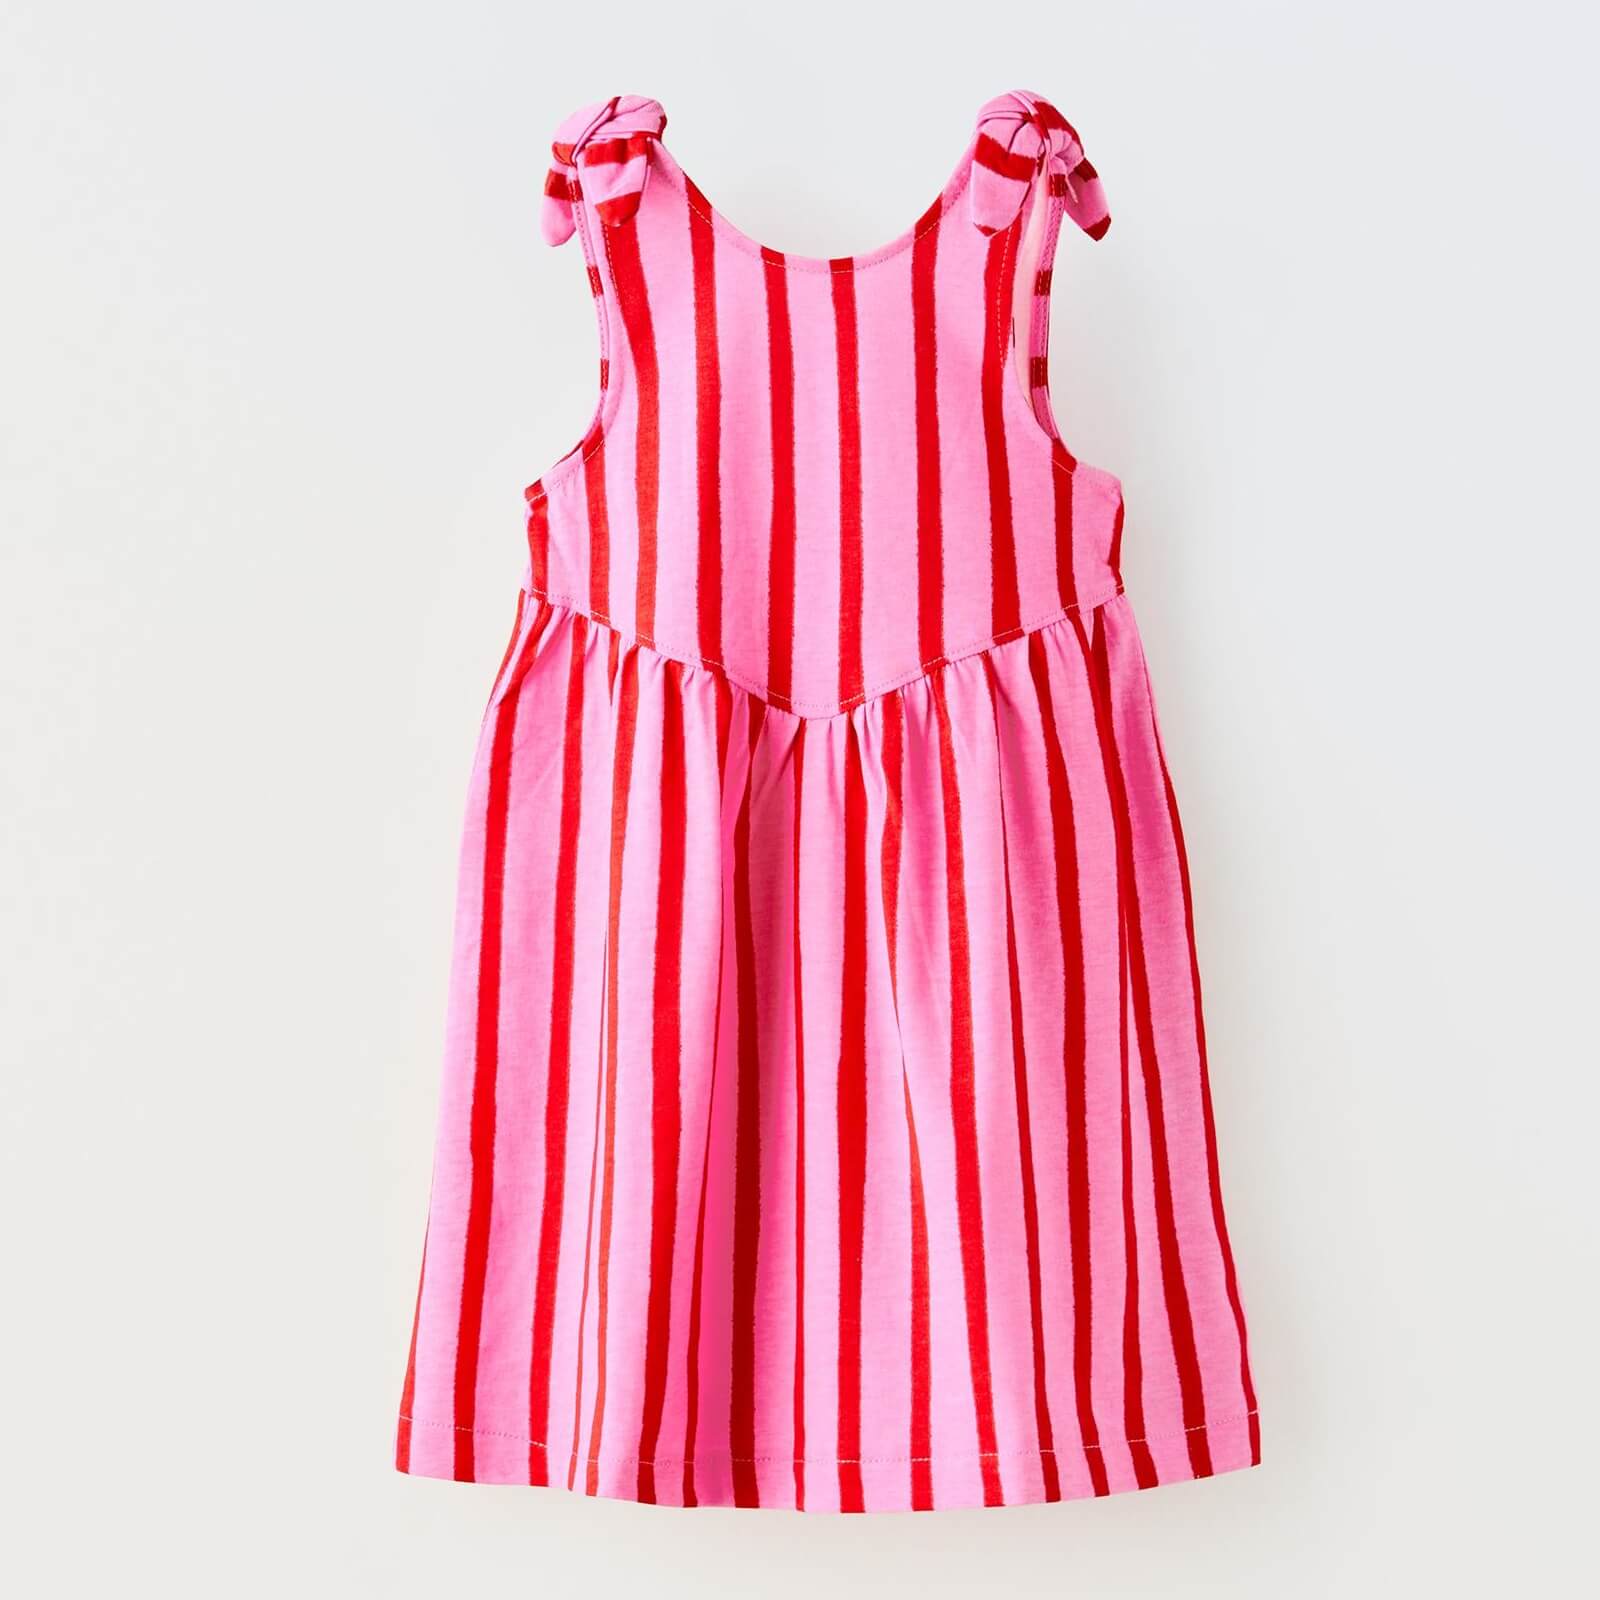 Платье Zara Striped With Knot, розовый/красный футболка zara striped with patch белый черный